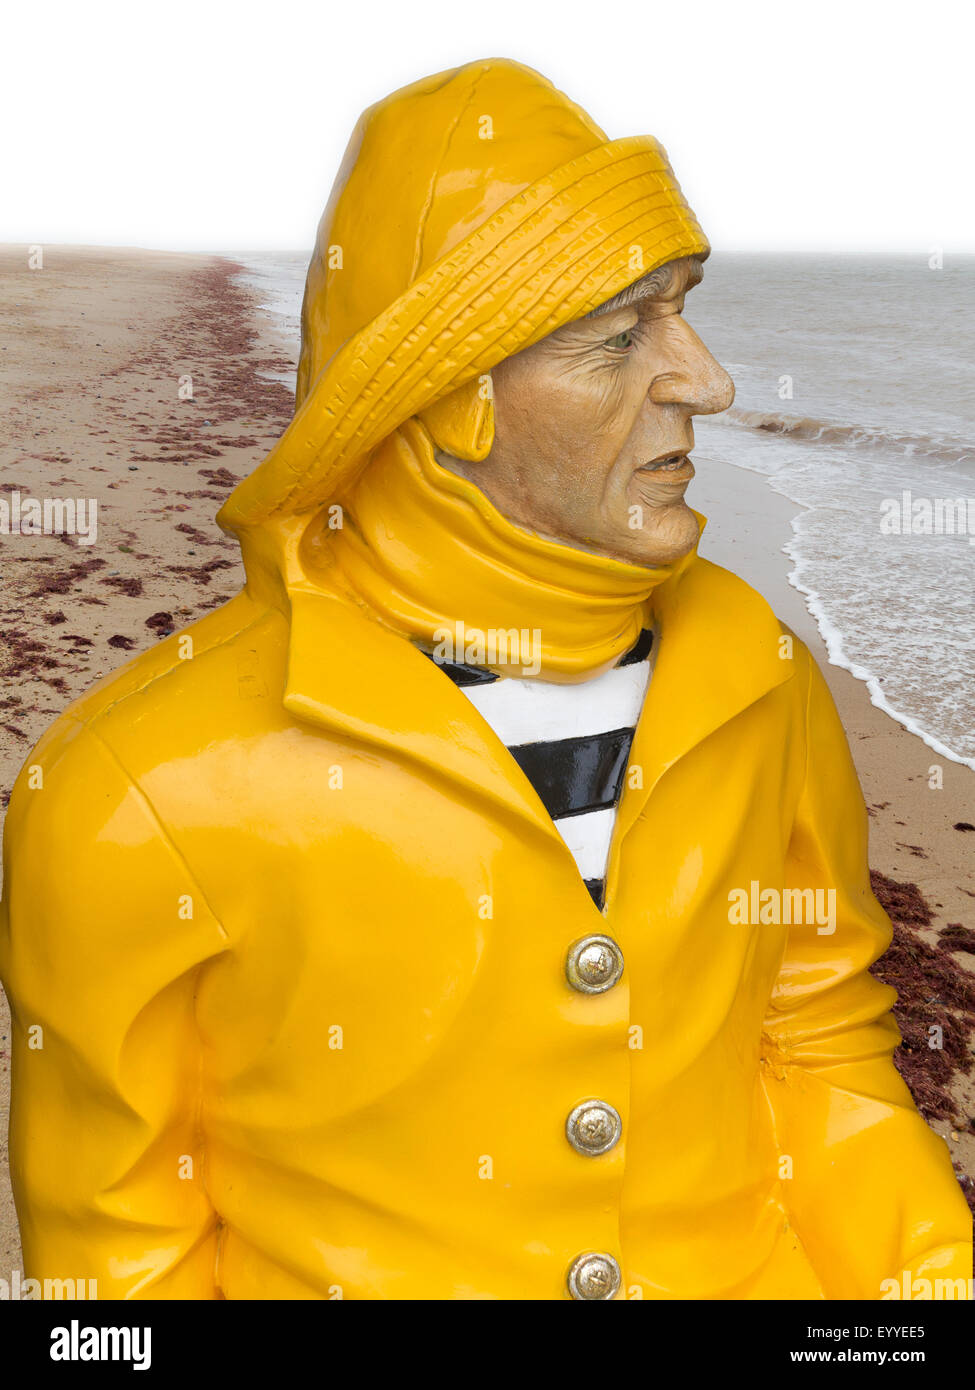 Una escultura pintada de pescador llevar amarillo brillante y Sou'wester Norfolk manipulados en beach ubicación Fotografía de - Alamy